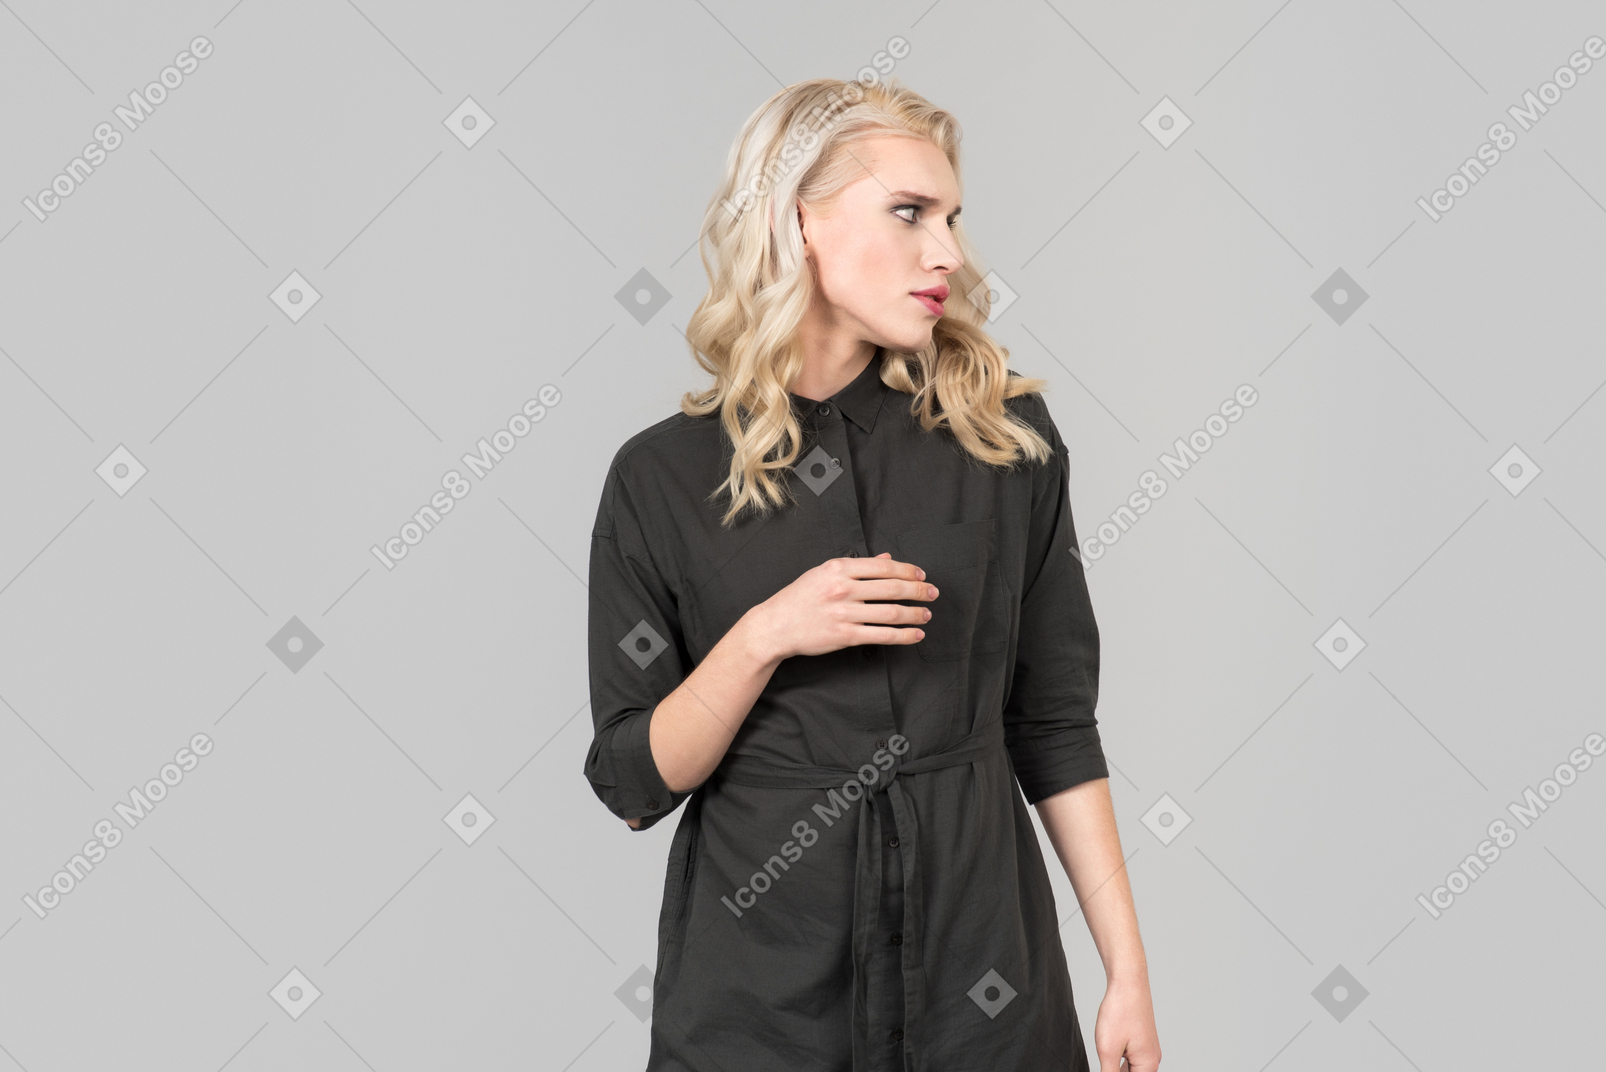 일반 회색 배경에 서있는 검은 드레스에 젊은 blond-haired 사람